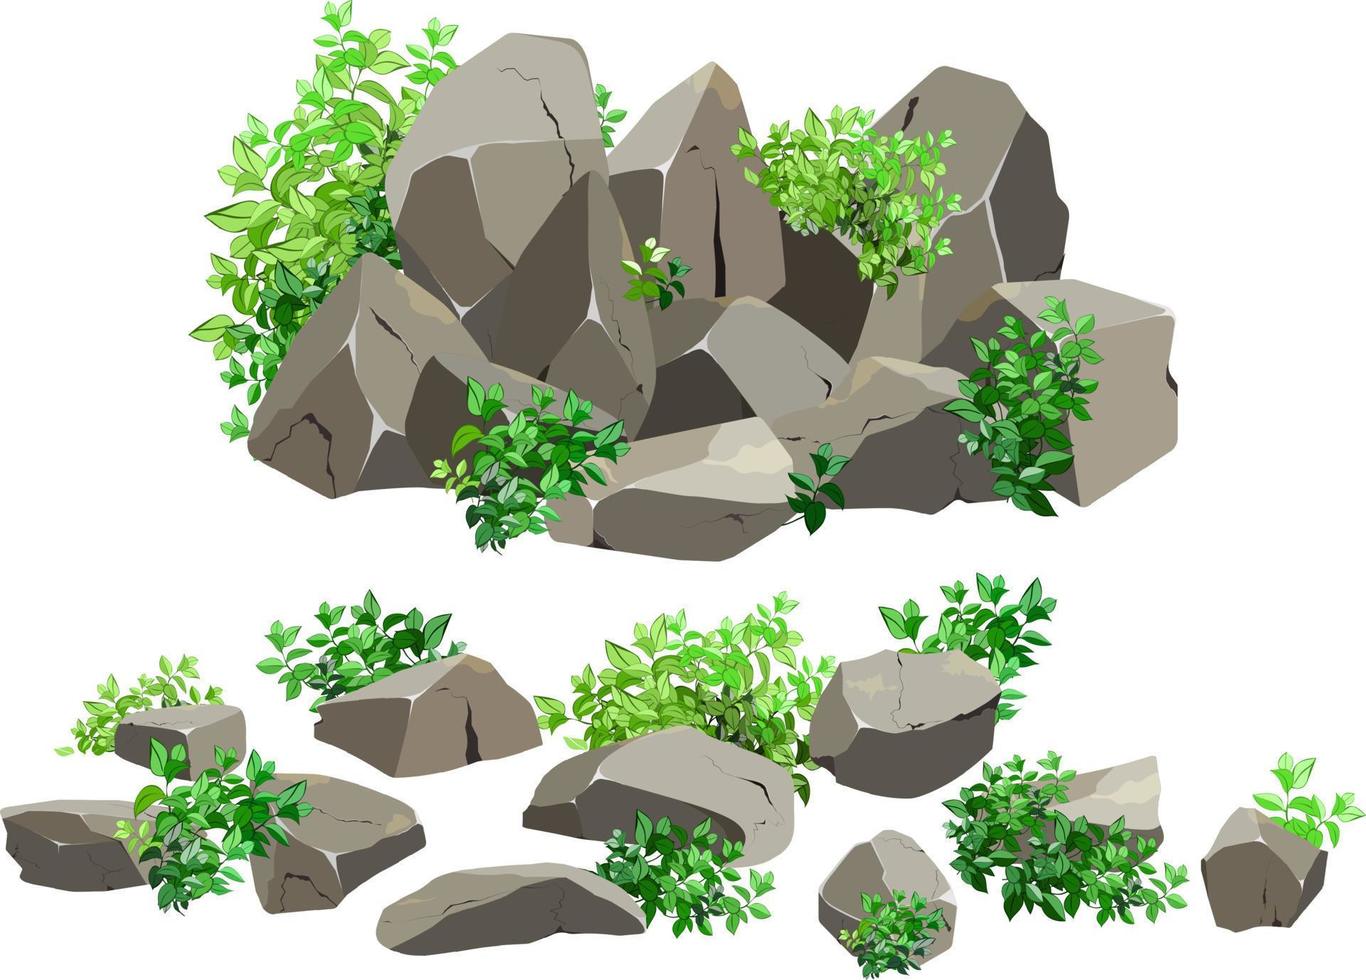 samling av stenar av olika former och växter.kustnära småsten, kullerstenar, grus, mineraler och geologisk formationer.rock fragment, stenblock och byggnad material.vektor illustration . vektor